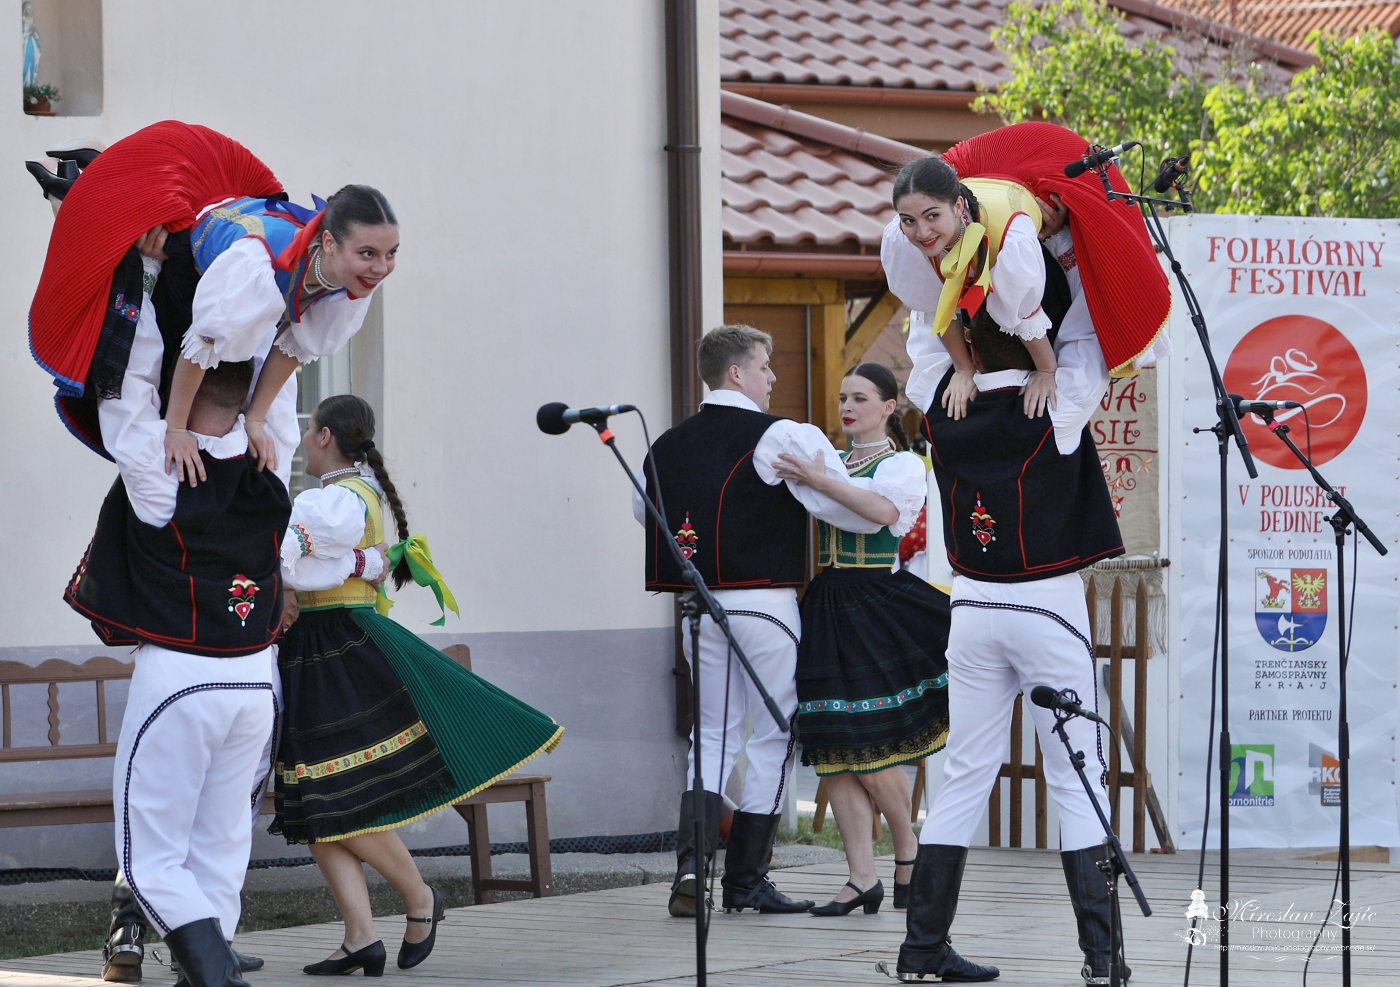 5. folklórny festival V poluskej dedine - folklórny súbor Jánošíček